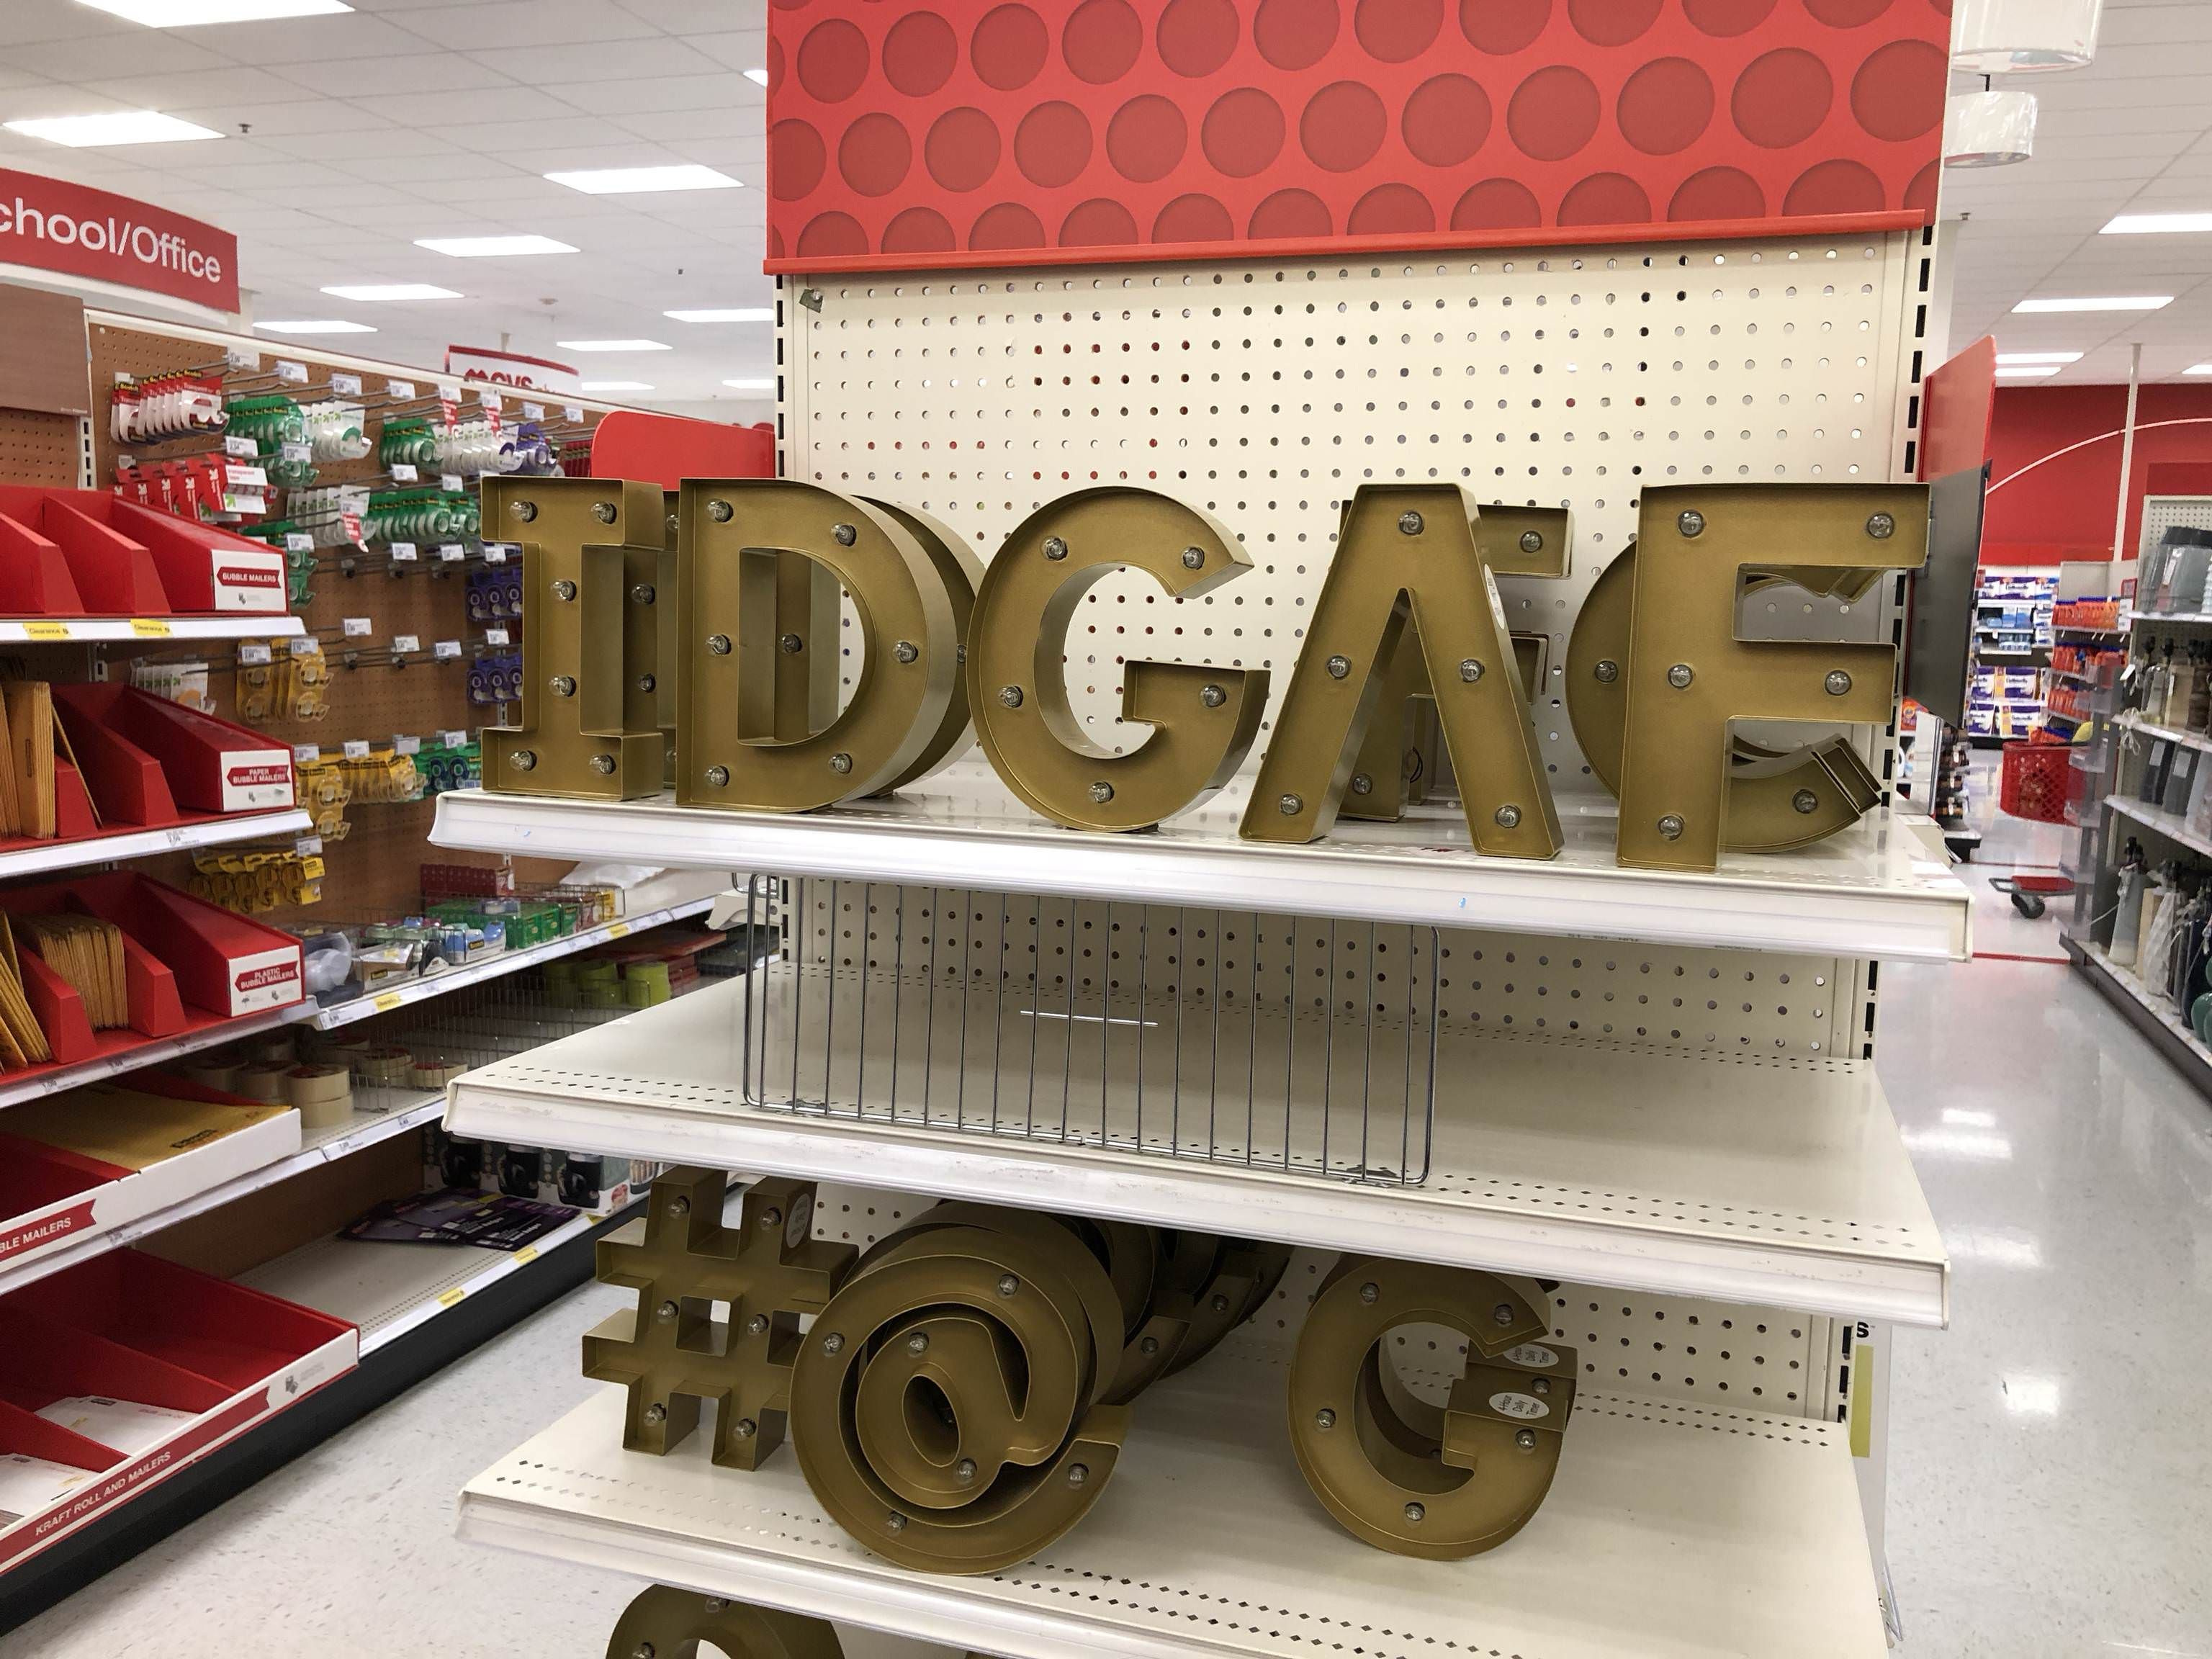 I hear ya, Target employee. I hear ya loud and clear.